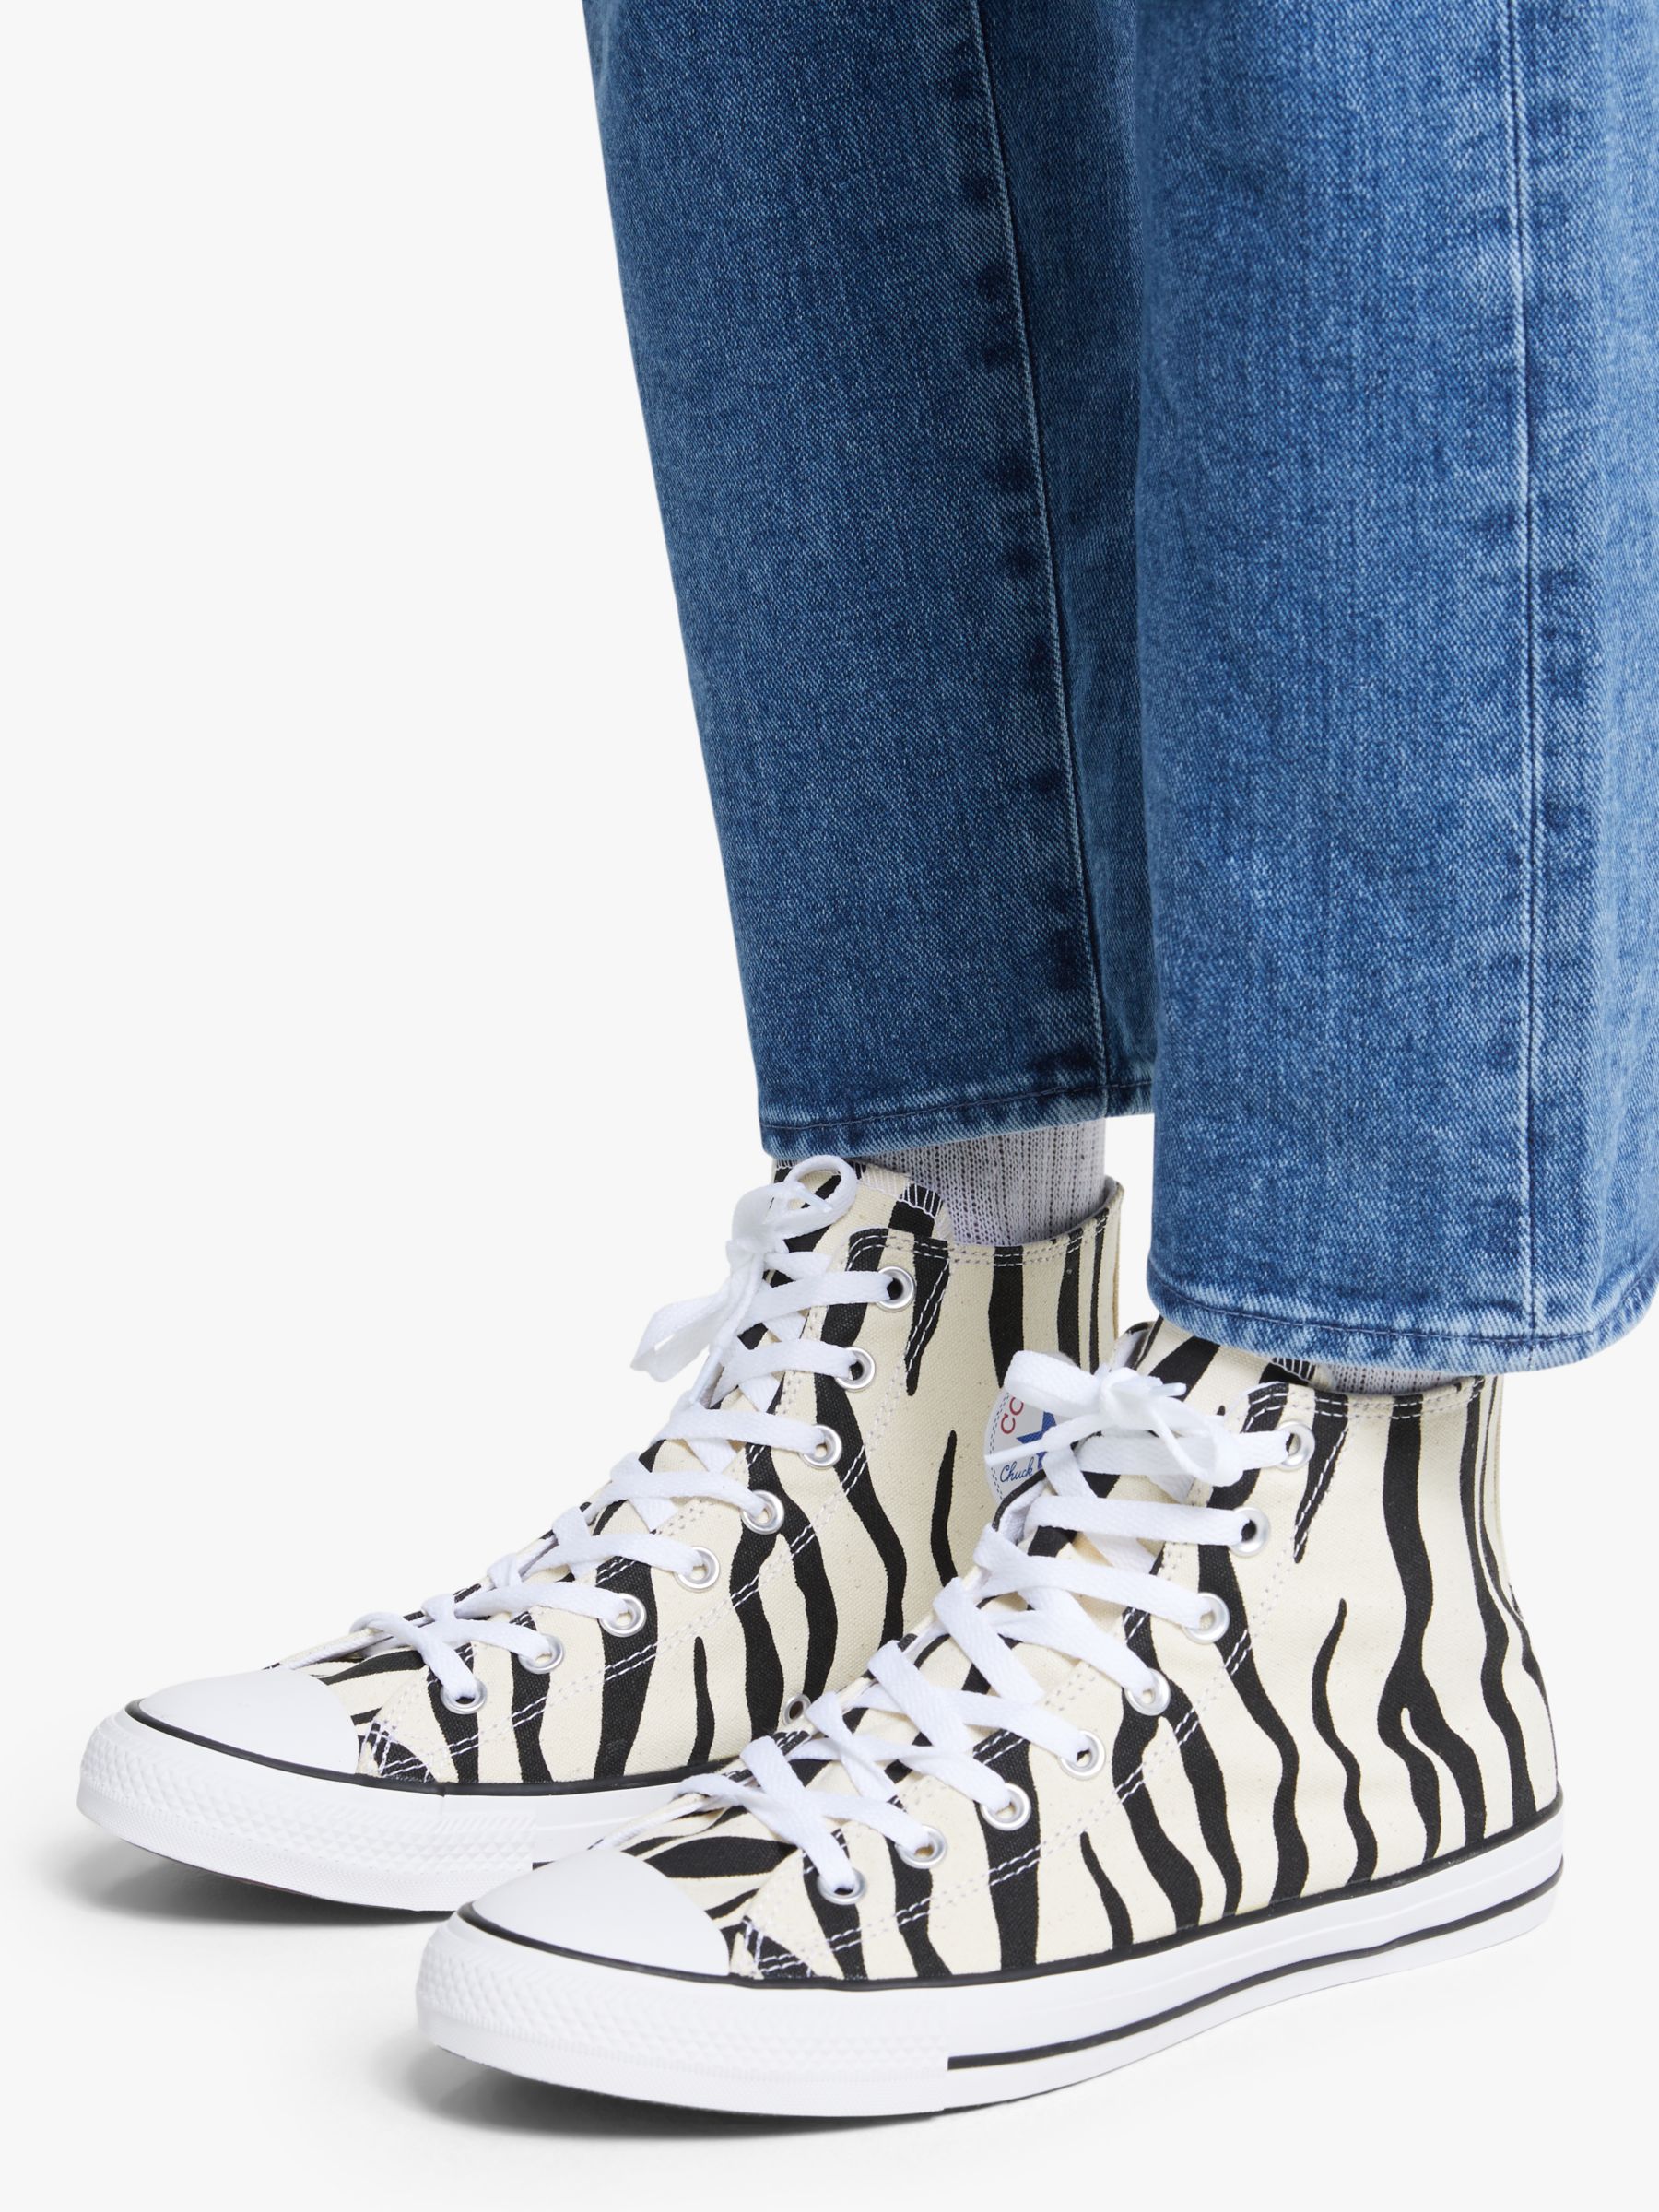 zebra high top converse